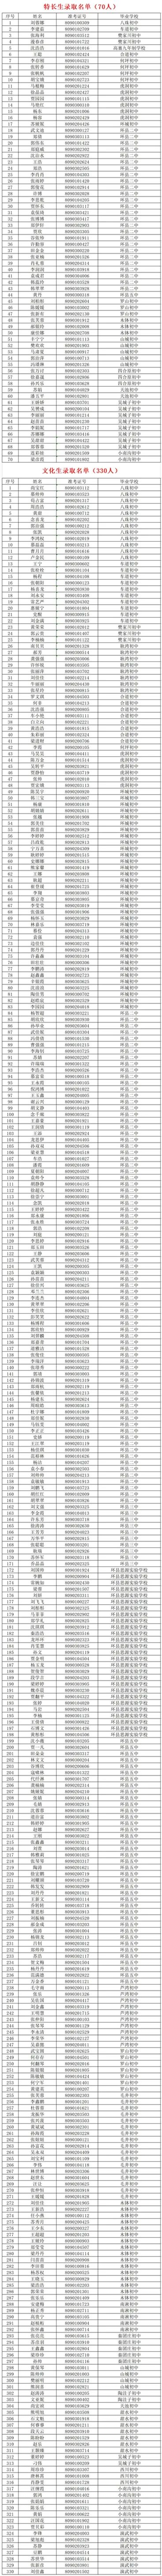 环县二中2021年高中招生录取榜单